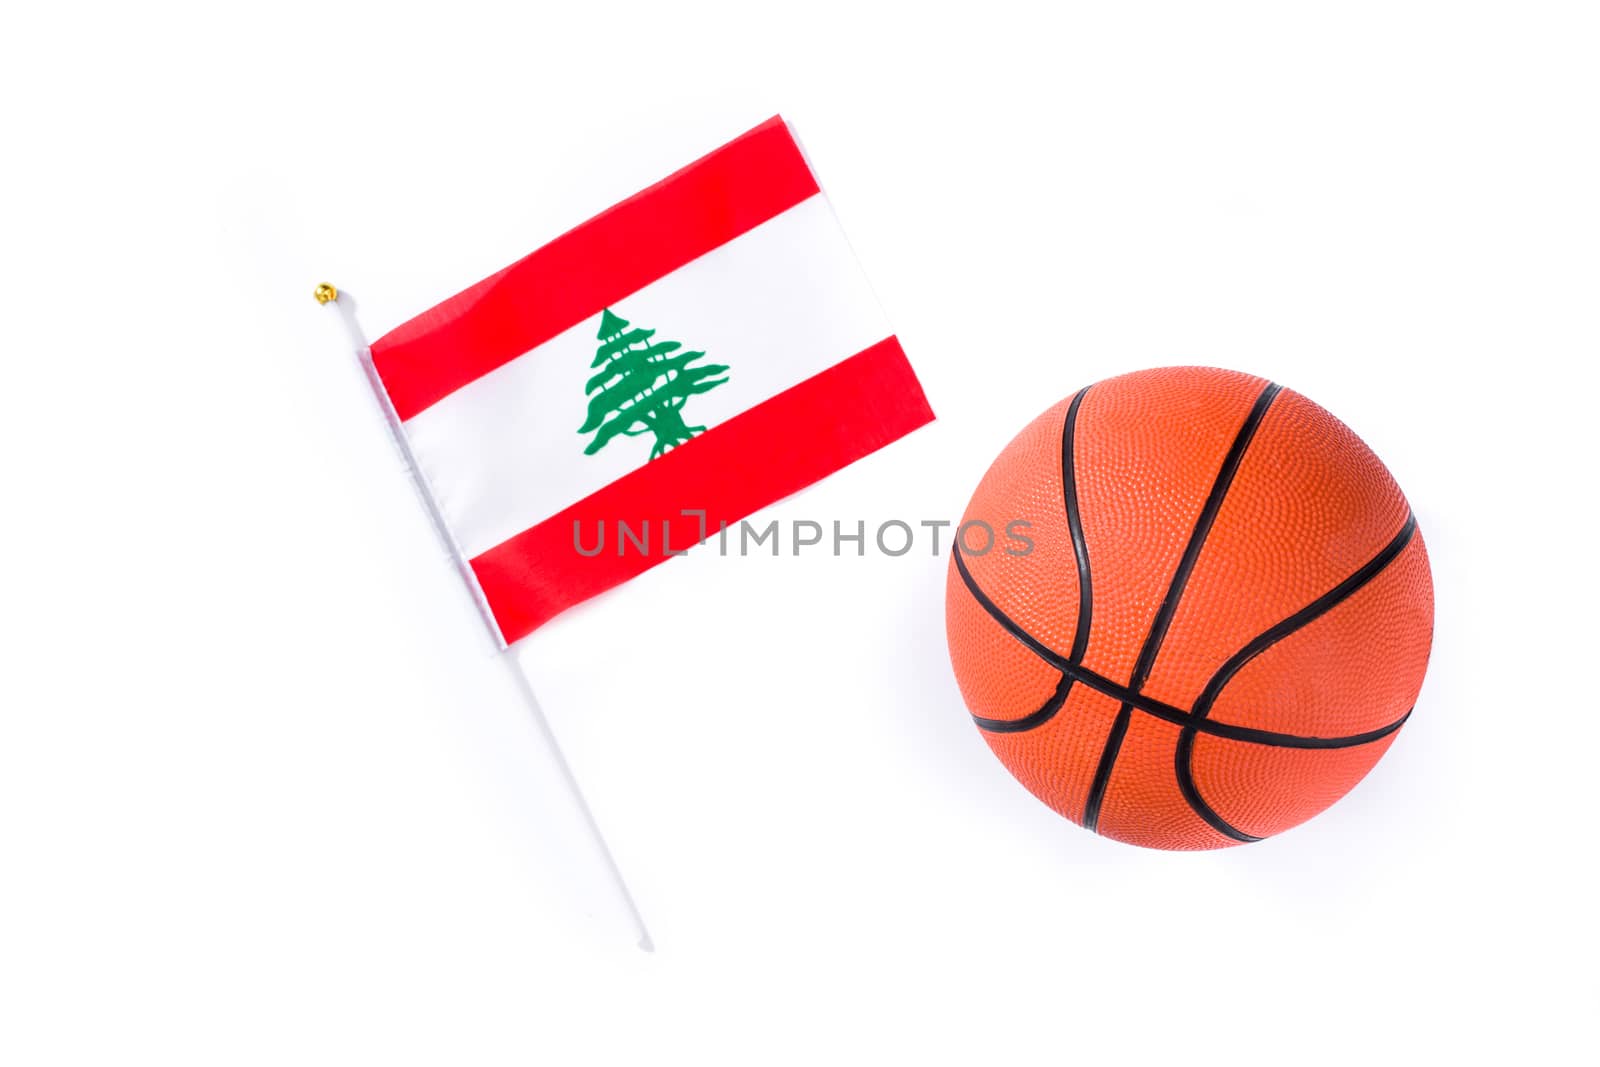 Lebanese flag and basketball isolated on white background